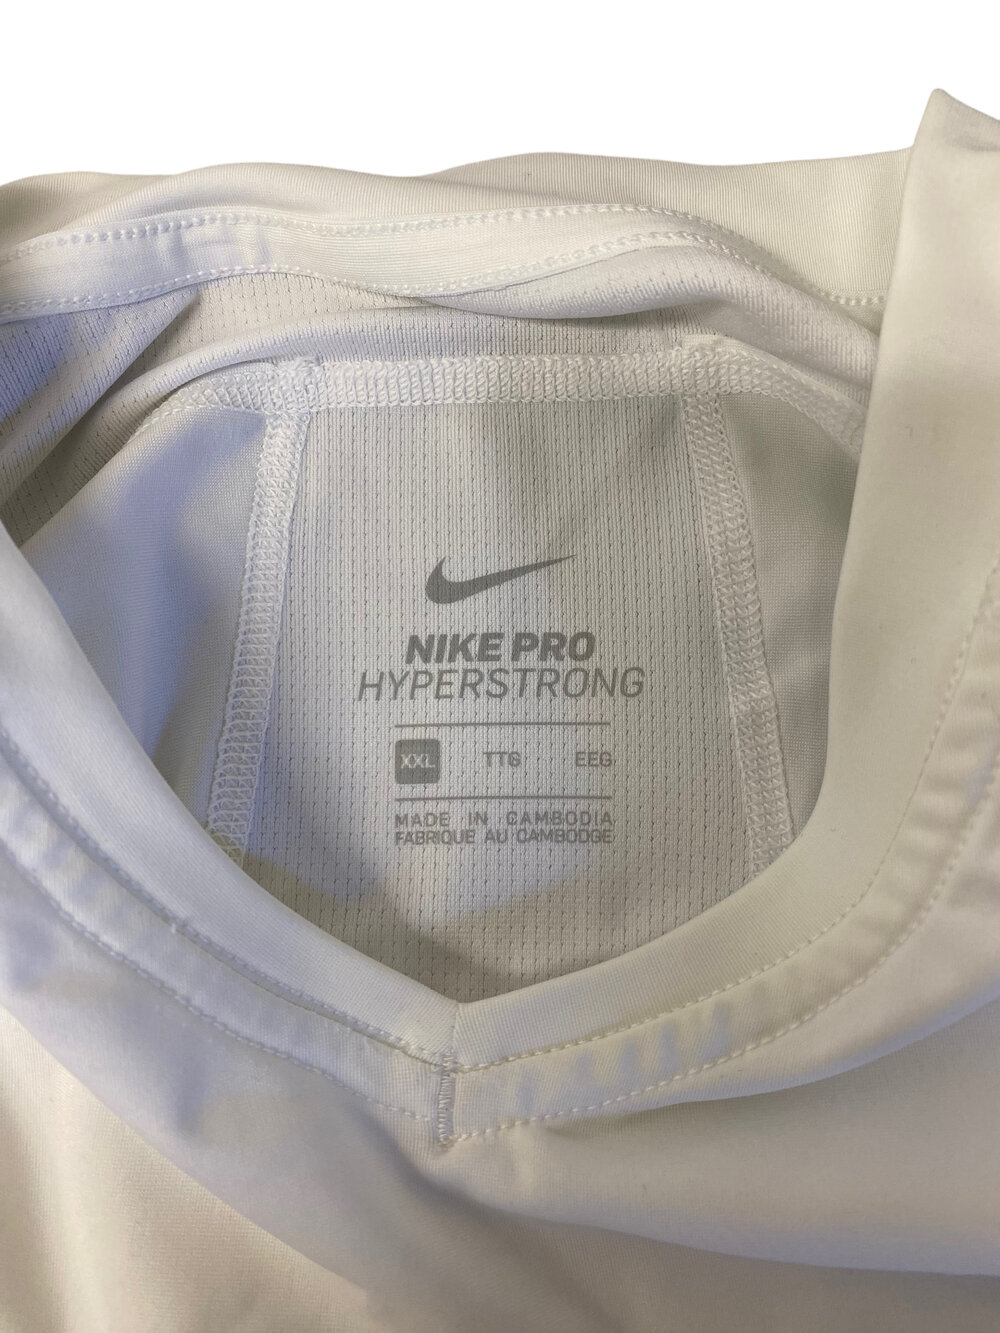 Nike Pro Hyperstrong 4-pad Shirt, Men's XXL — Mercer Island Thrift Shop